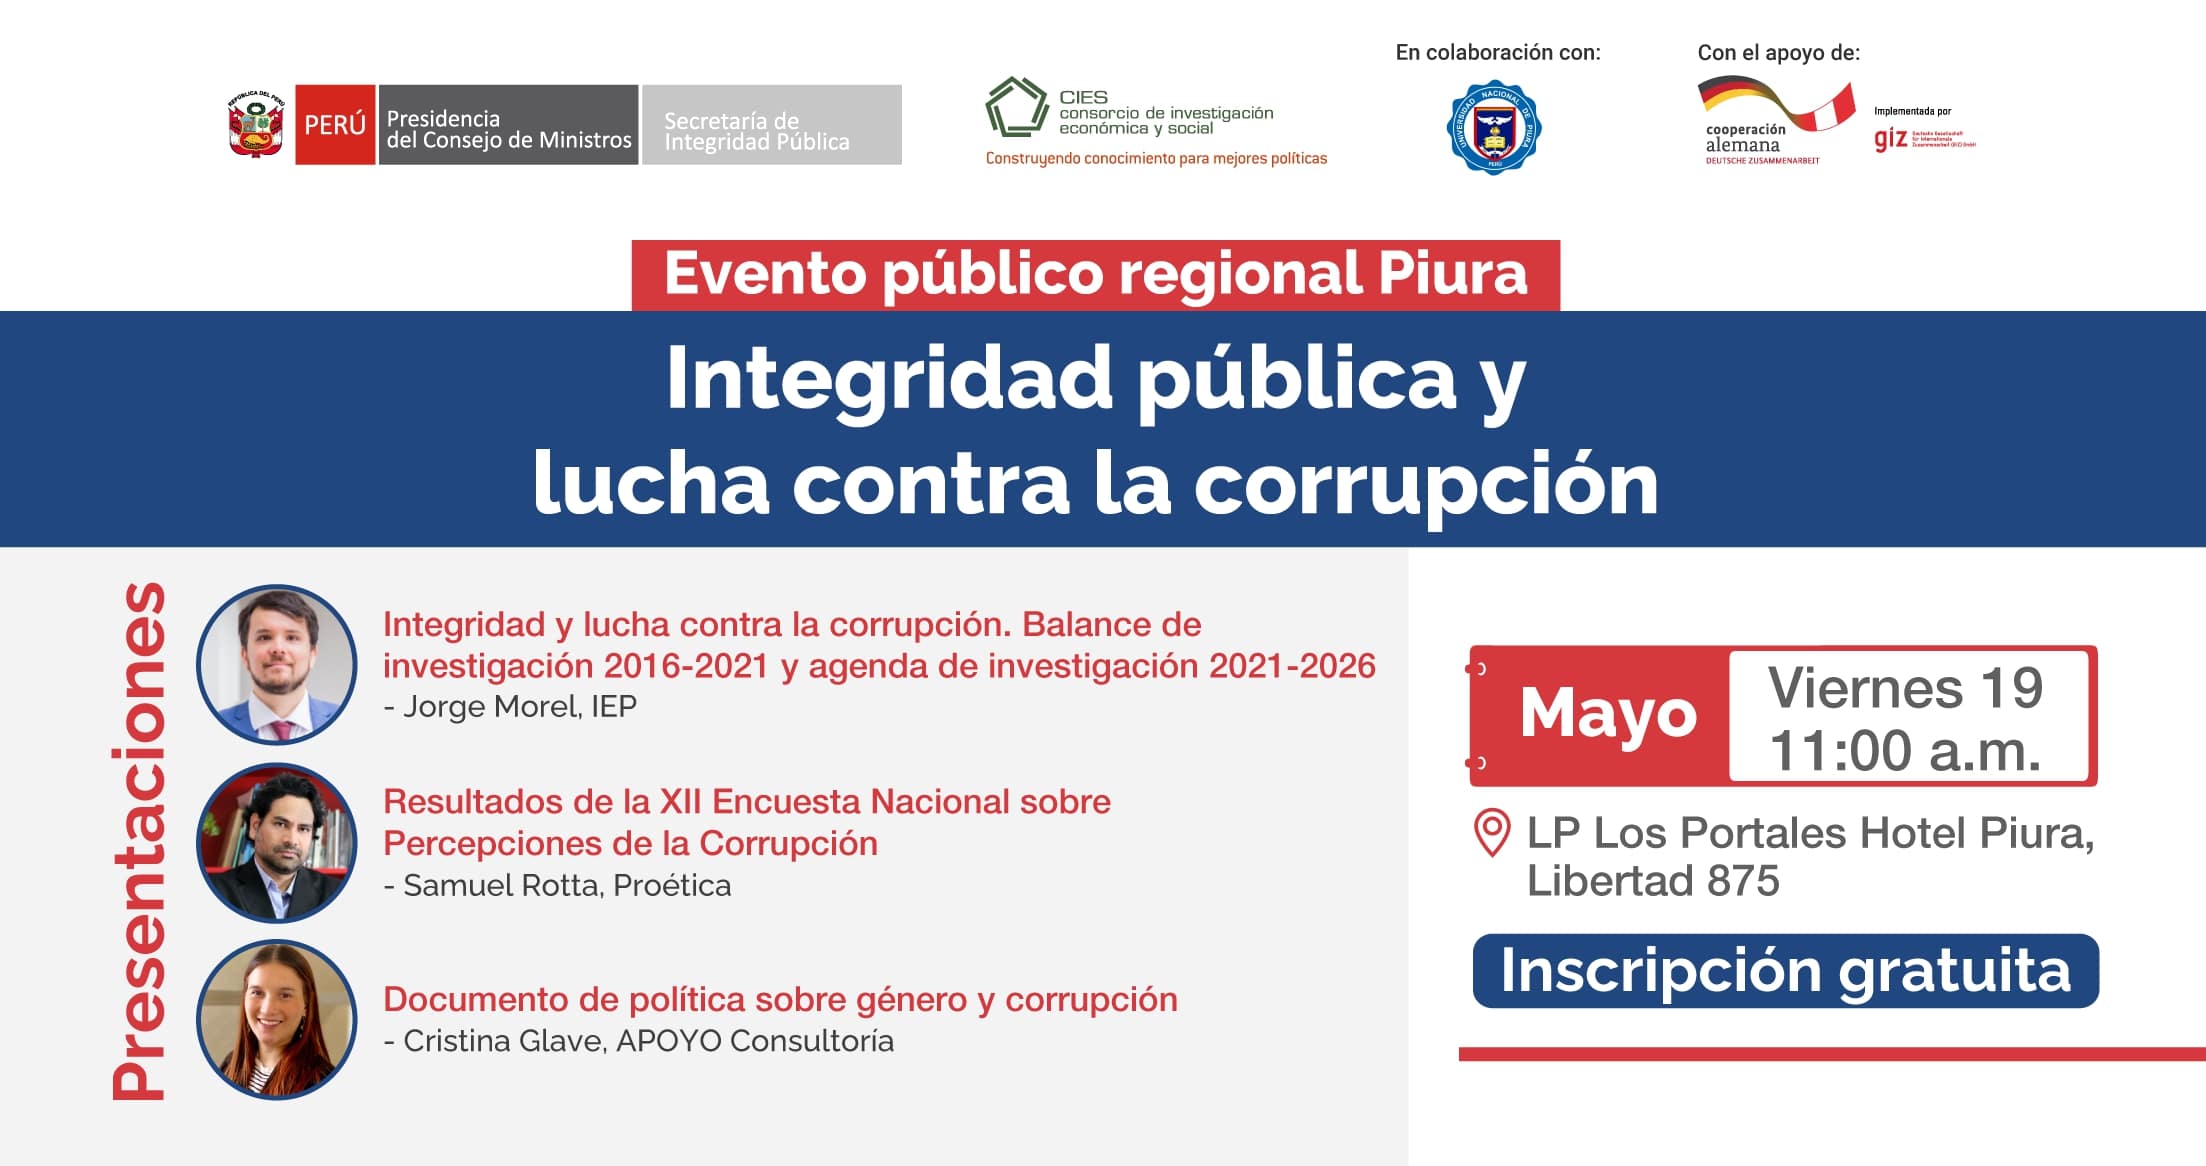 Piura Evento público regional “Integridad pública y lucha contra la corrupción”